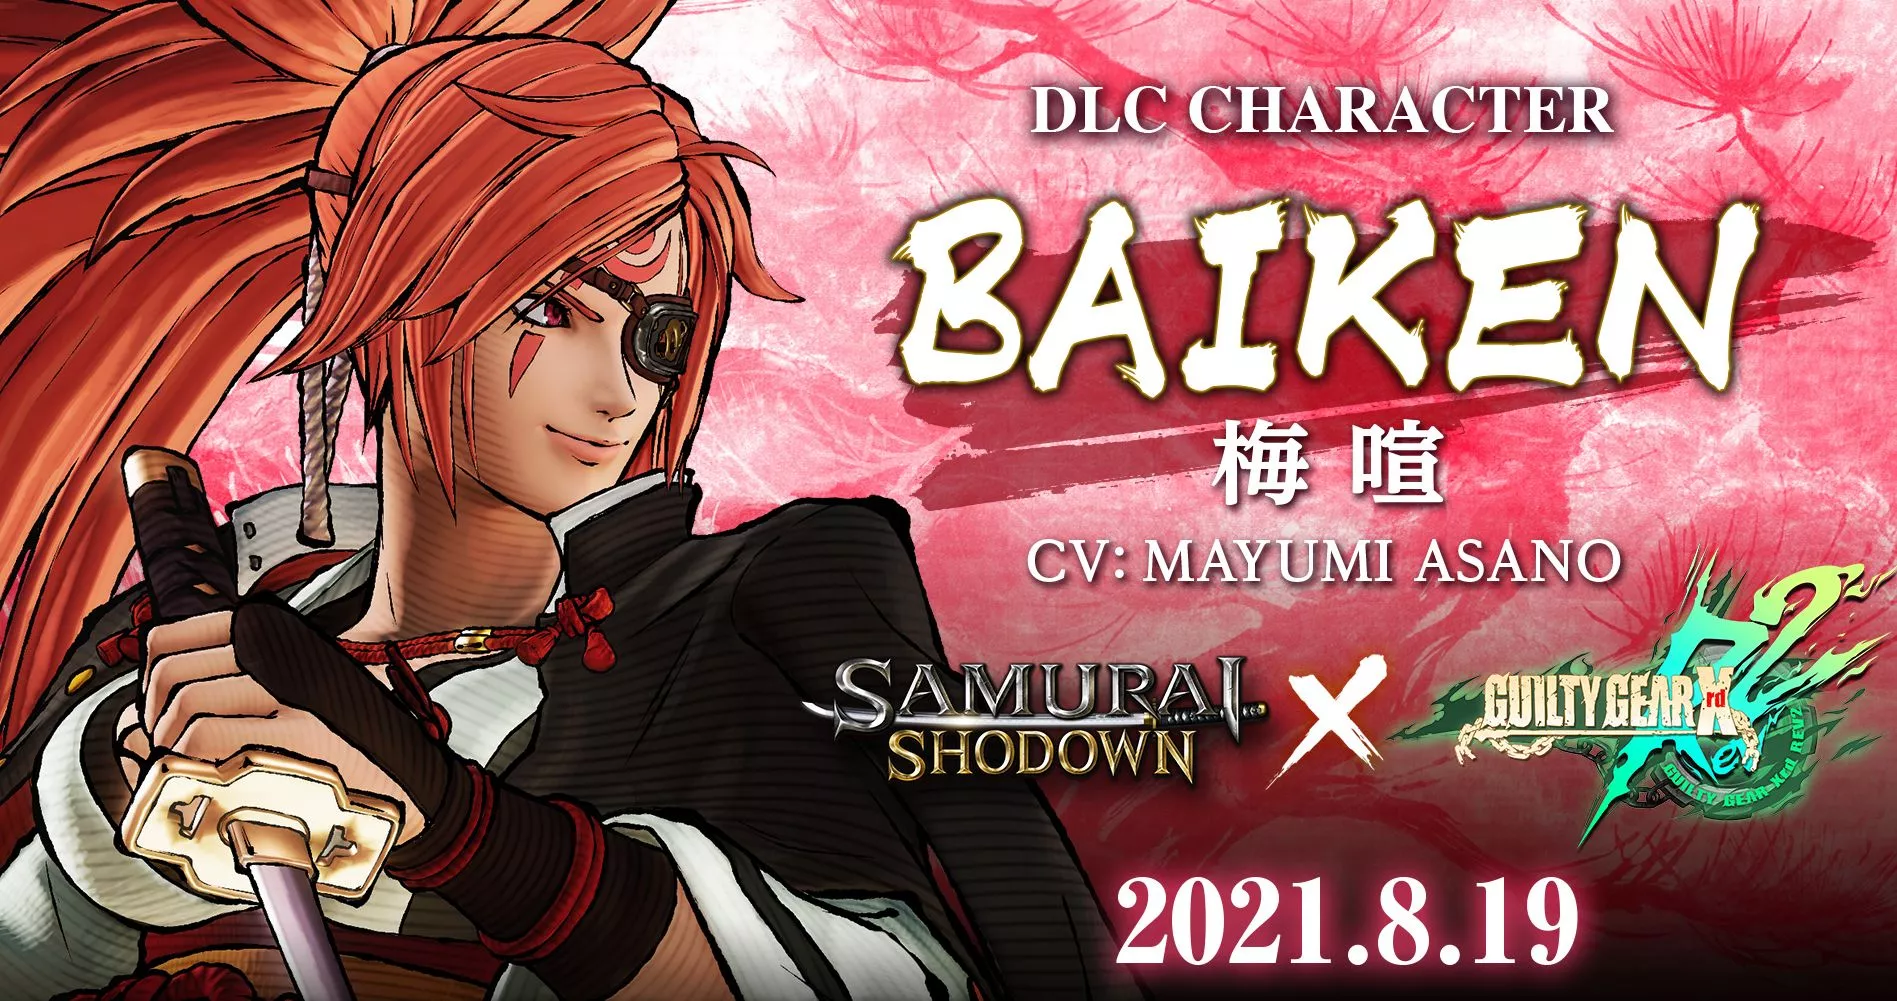 Samurai Shodown: Neuer DLC-Charakter 'Baiken' Heropic